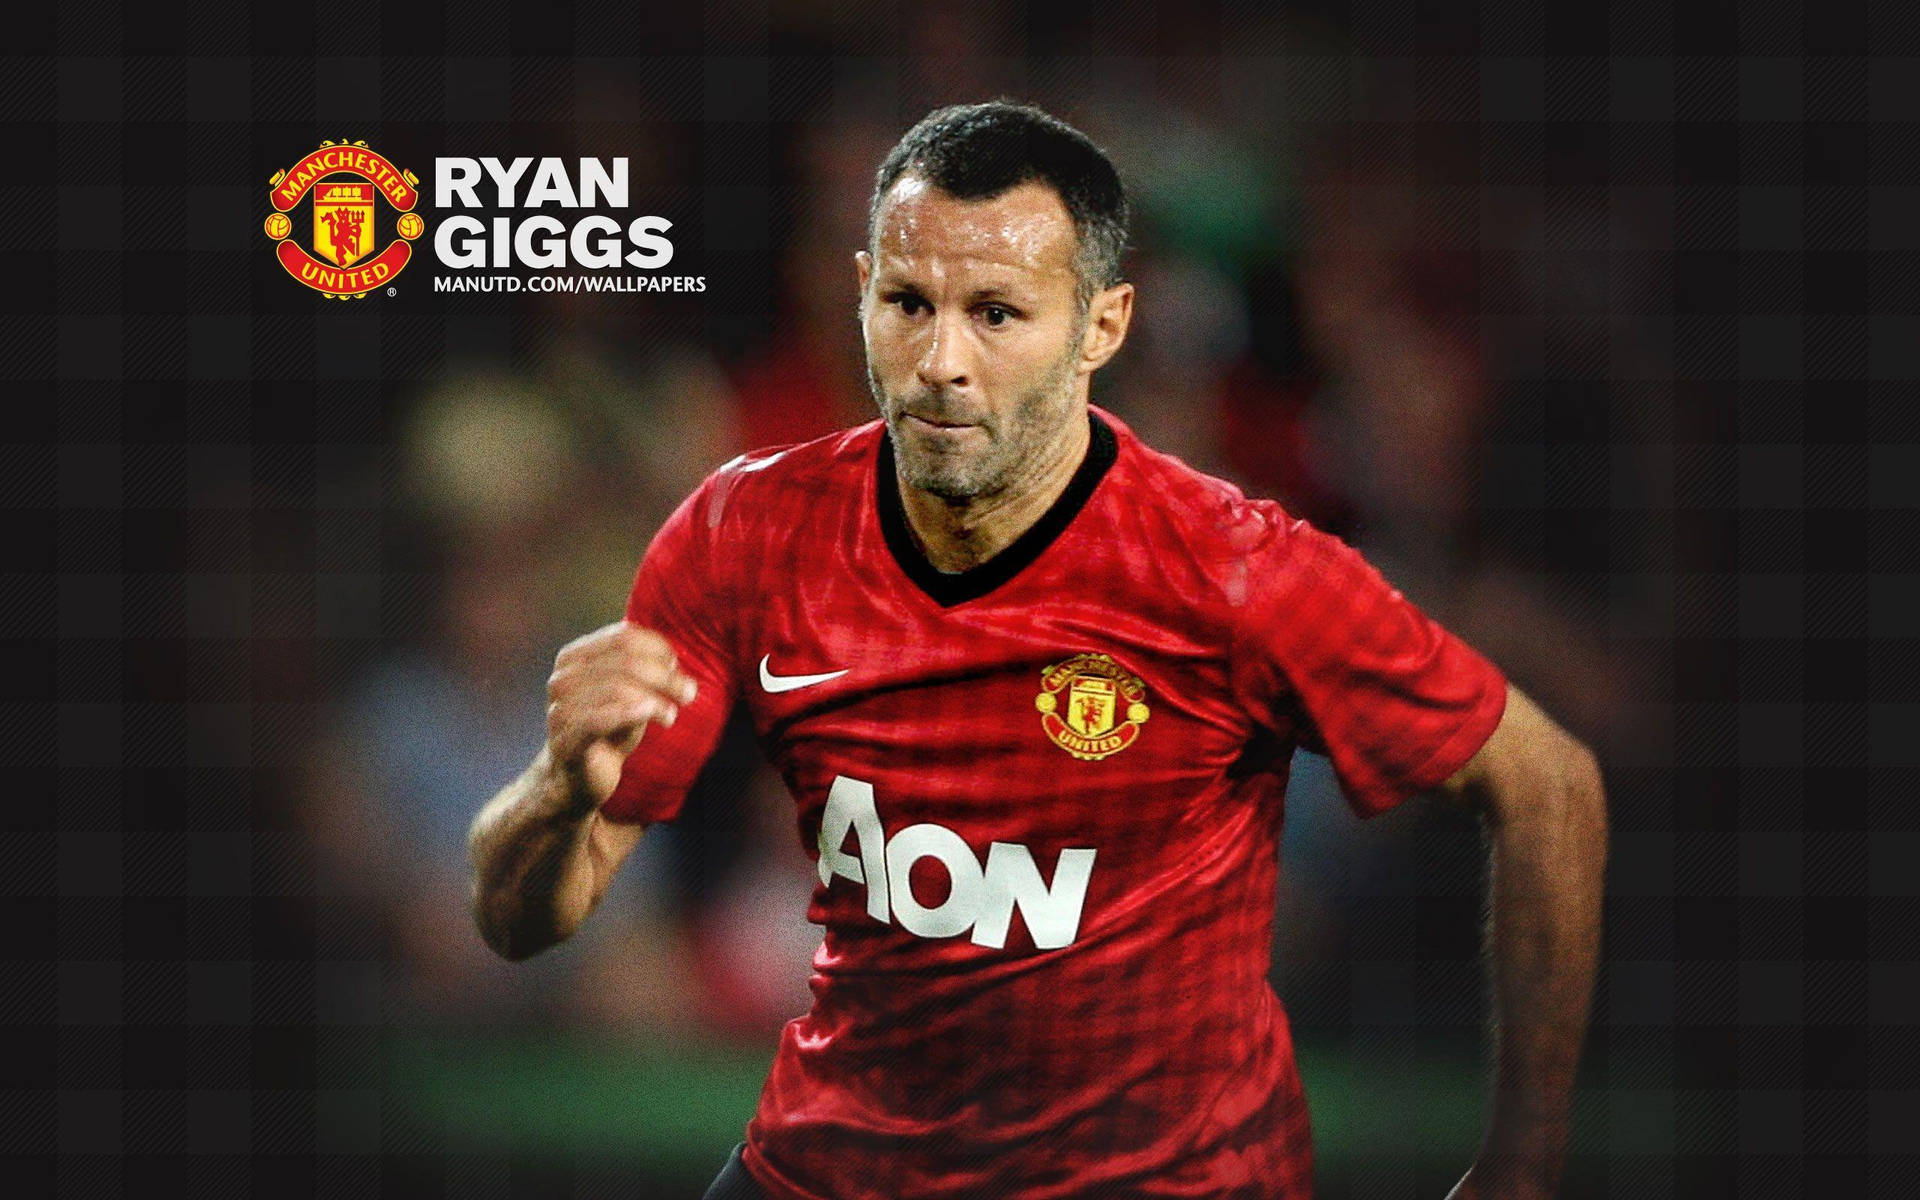 Ryangiggs Funktioniert Als Manchester United Spielermerkmal. Wallpaper